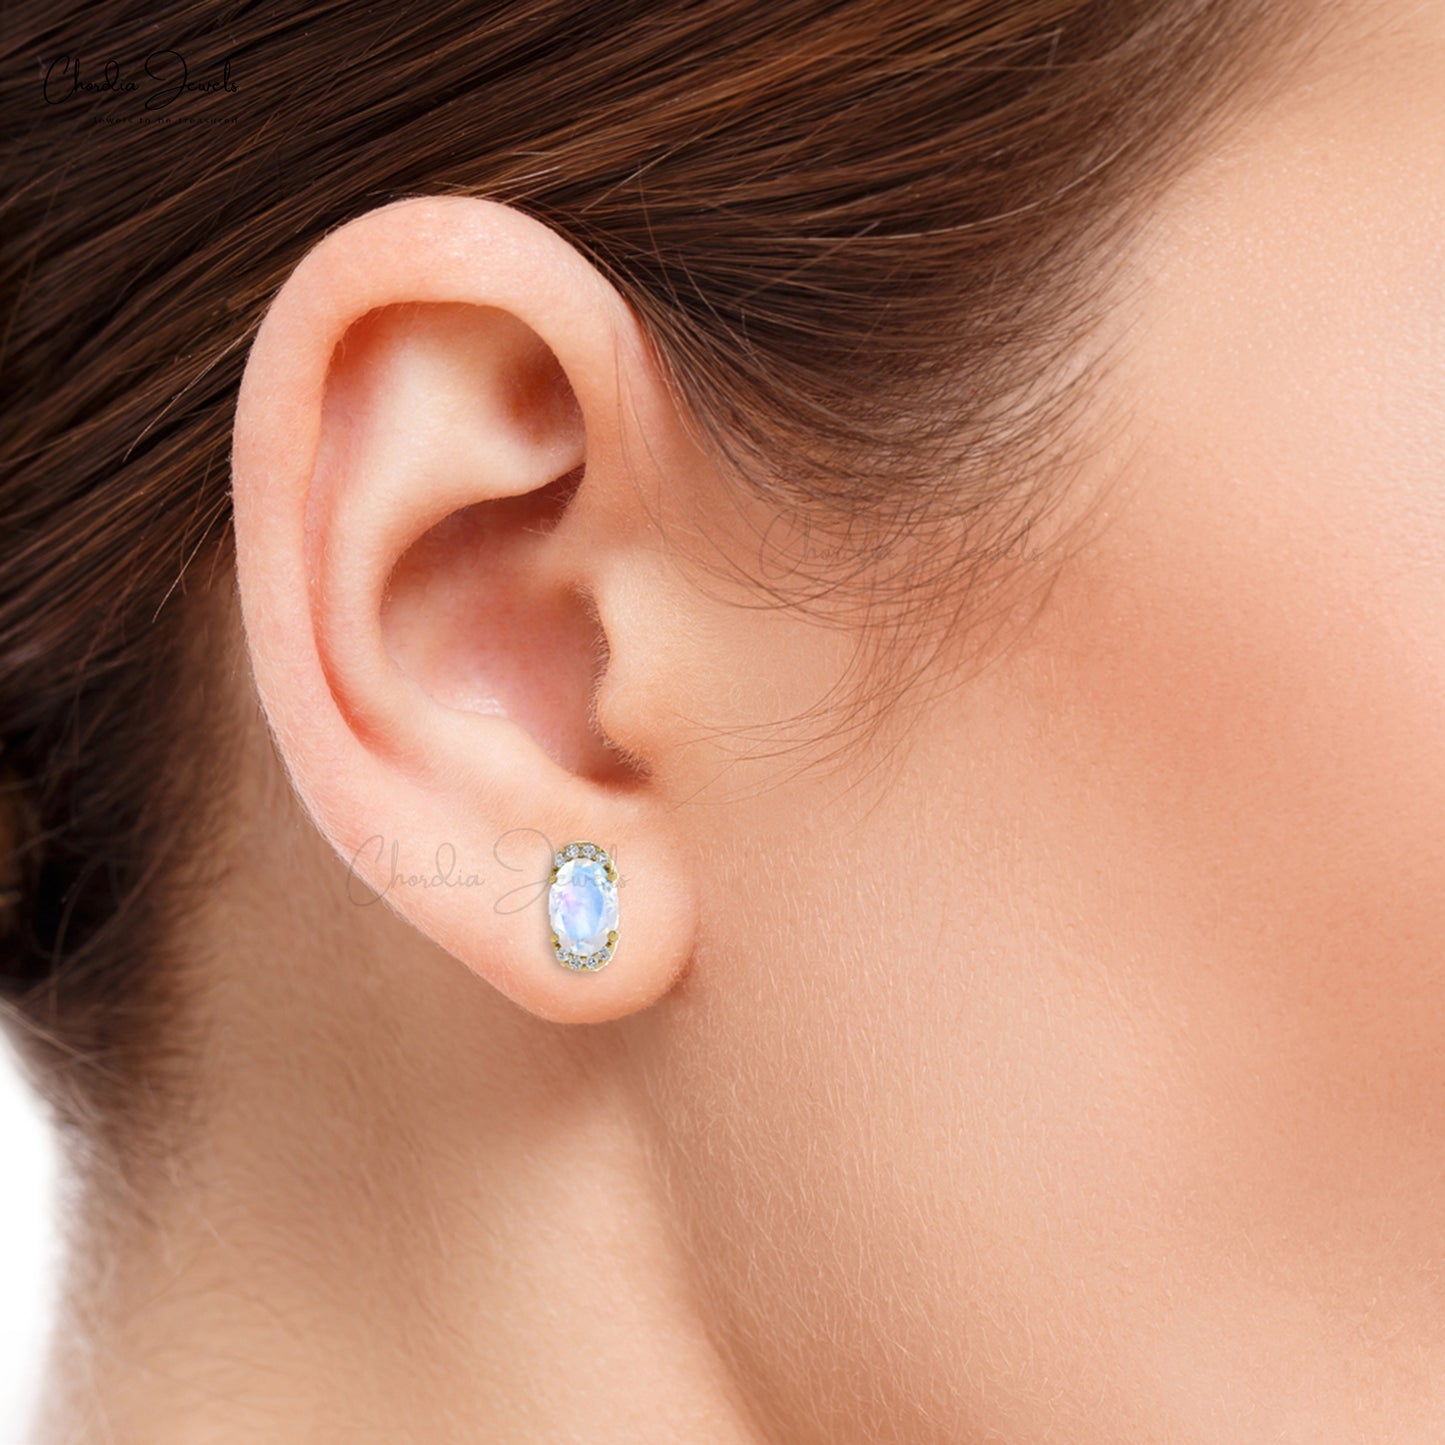 AAA Quality June Birthstone Rainbow Moonstone 14K Gold Diamond Half Halo Stud Earrings